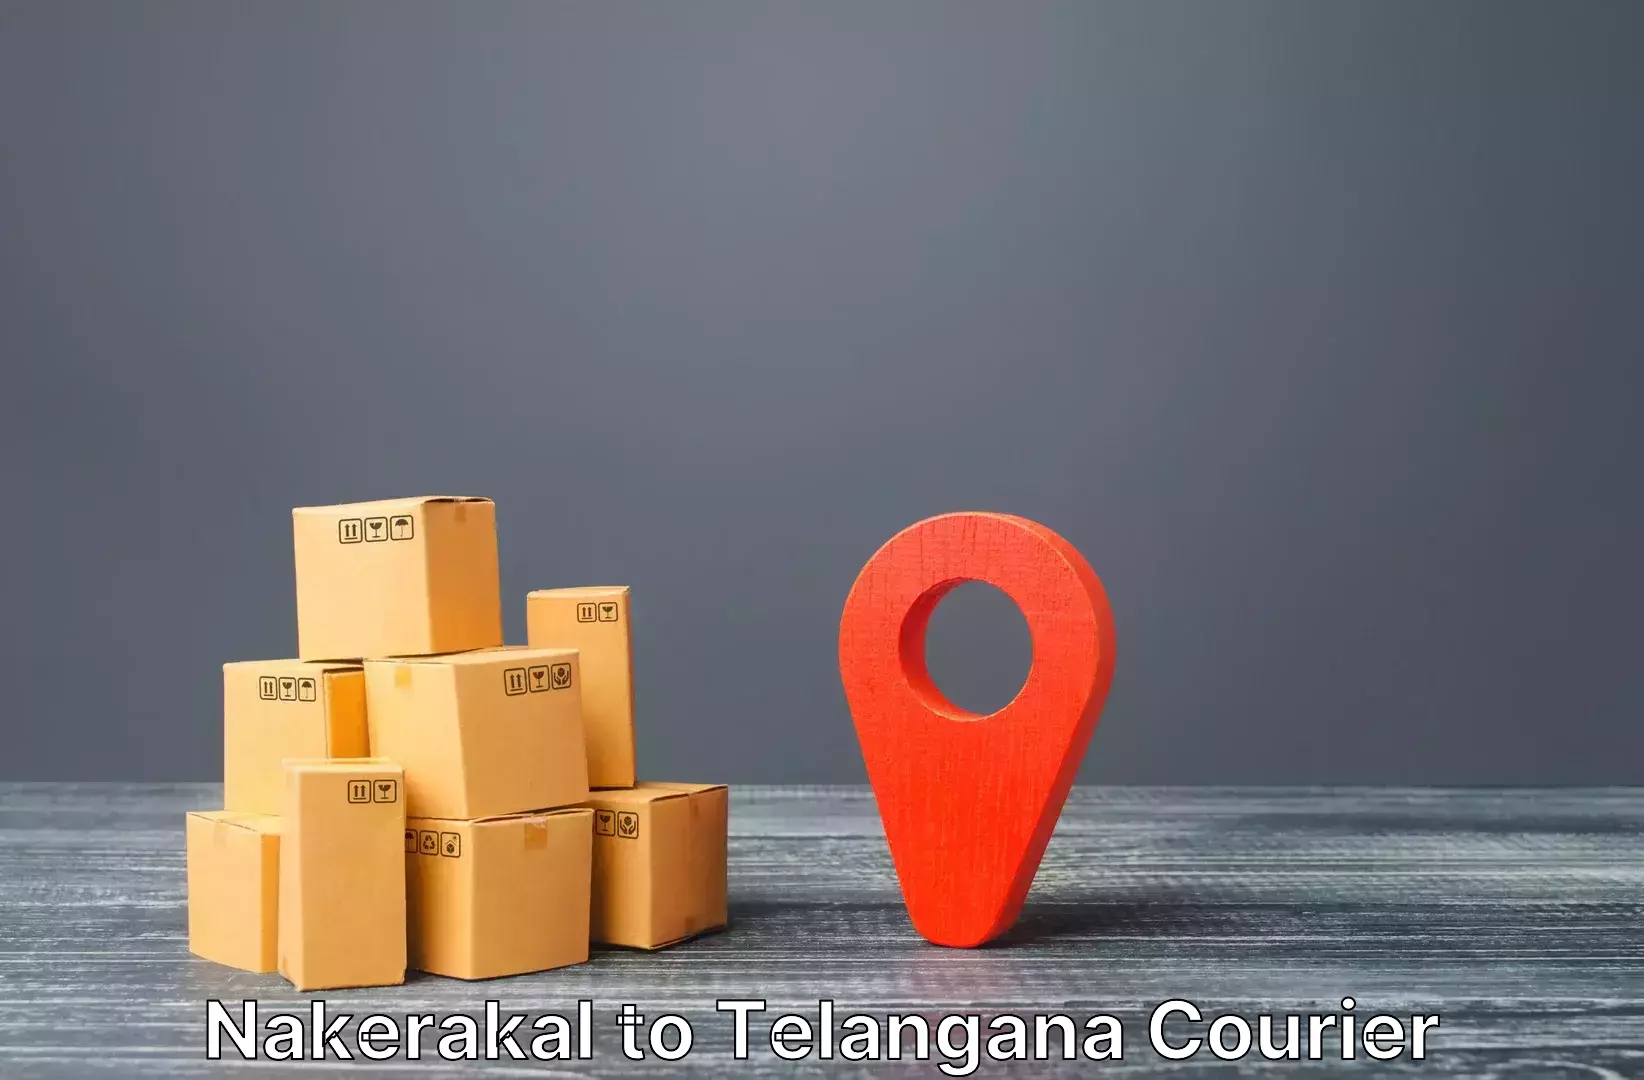 Luggage courier planning Nakerakal to Bodhan